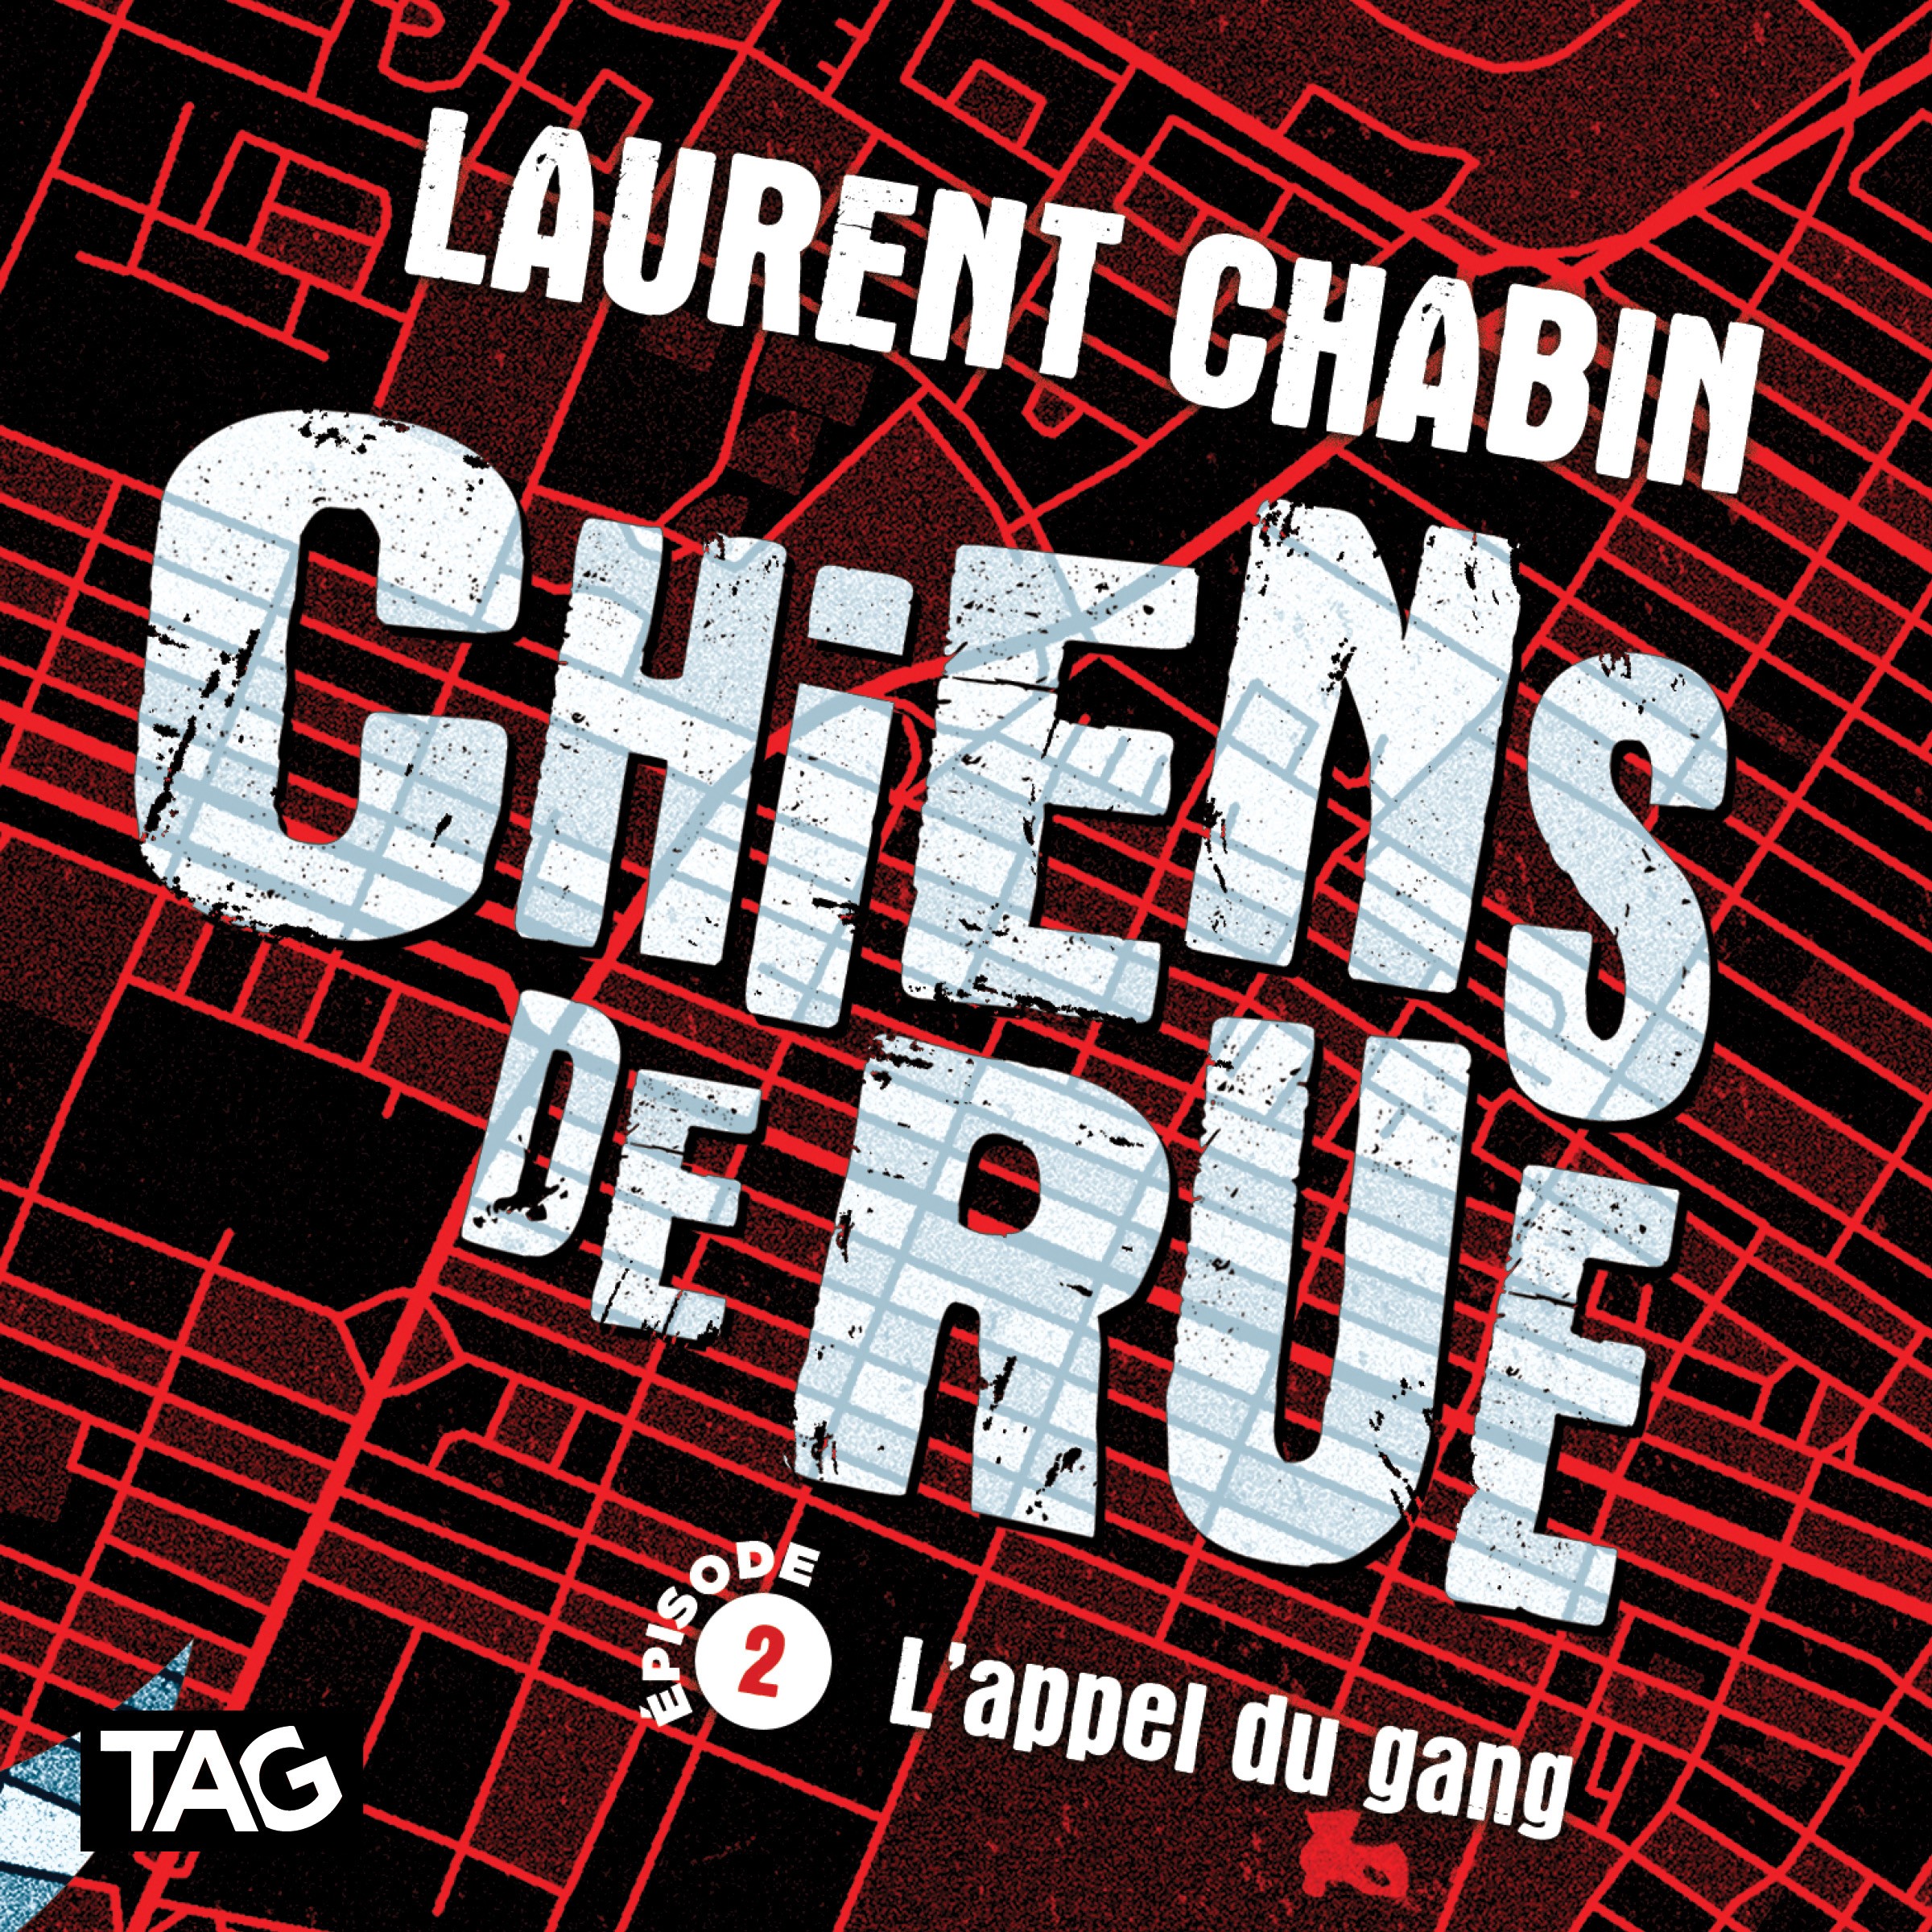 Couverture du livre audio Chiens de rue - épisode 2 De Laurent Chabin 